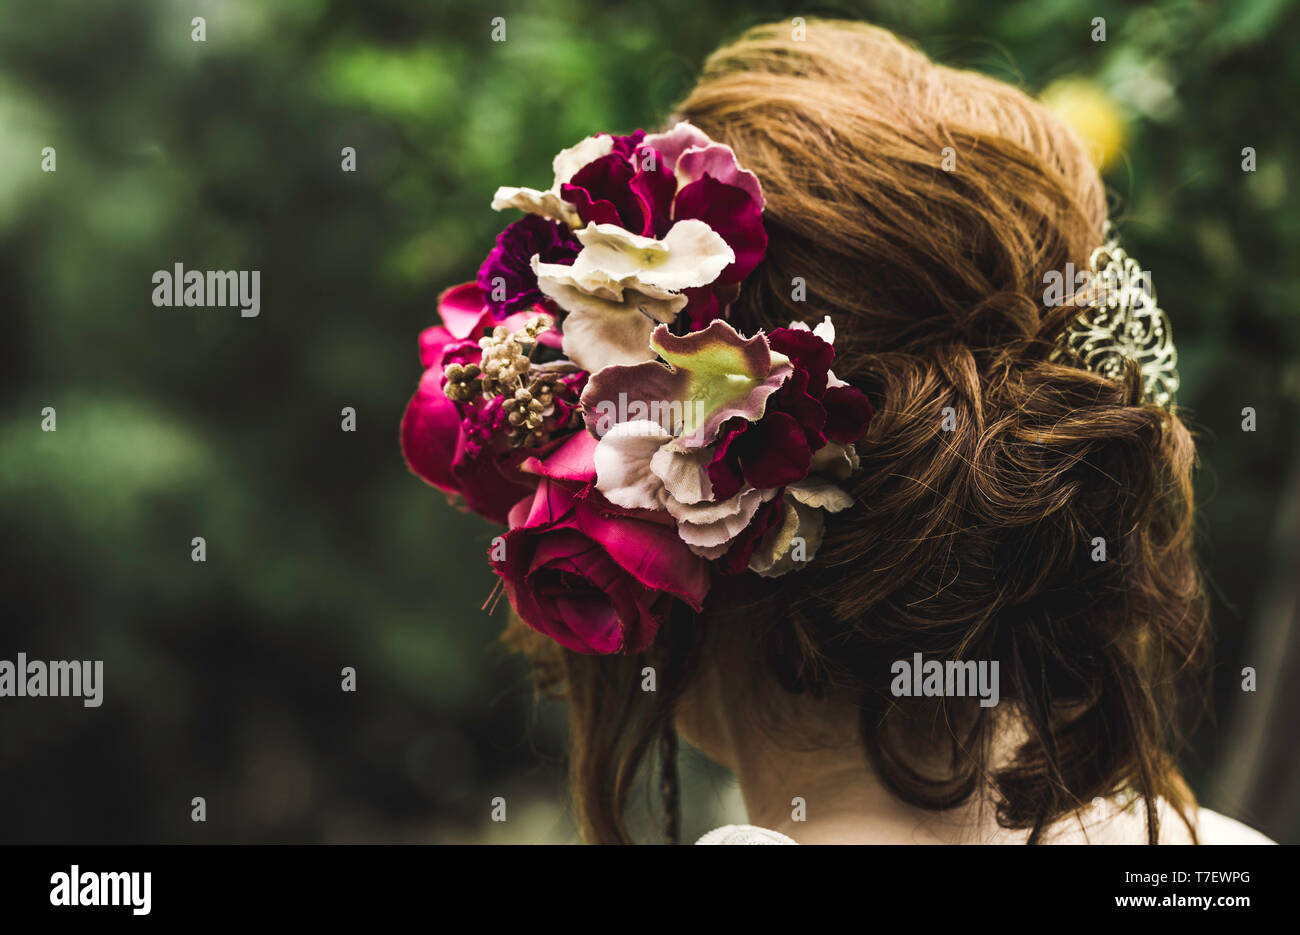 Frisur mit bunten Blumen. Schönes Haar mit Blumen geschmückt. Auf grünem Hintergrund isoliert. Hair Care Konzept. Rückseite anzeigen Stockfoto